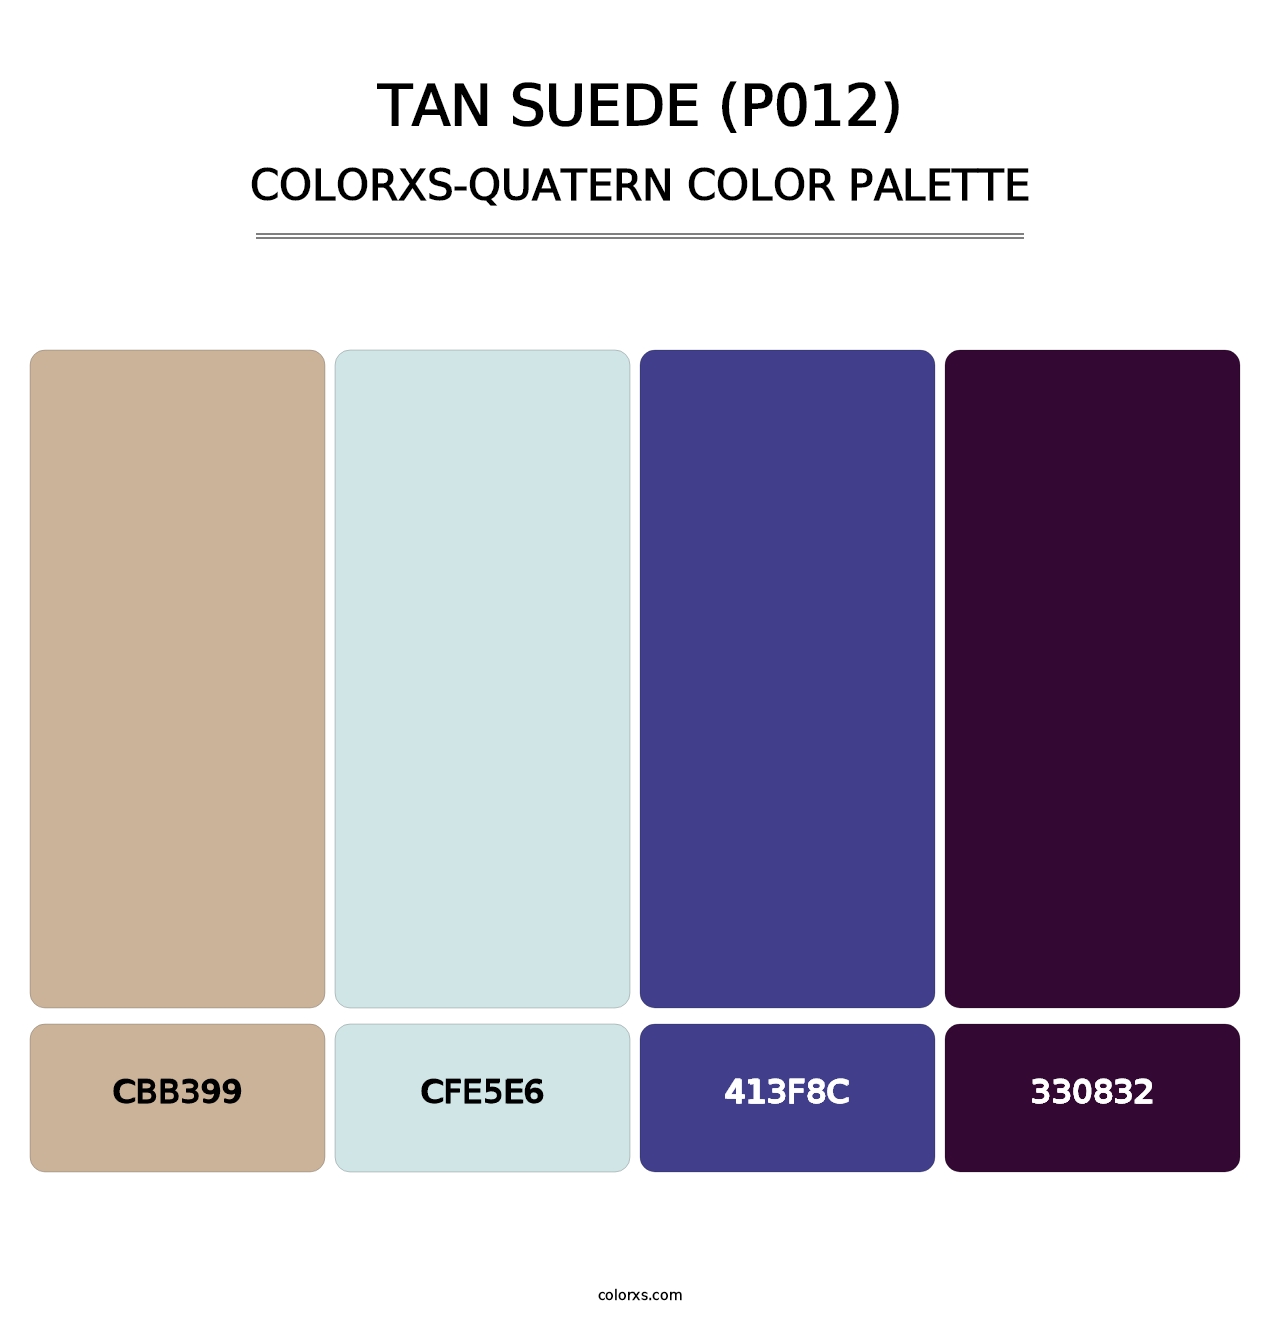 Tan Suede (P012) - Colorxs Quatern Palette